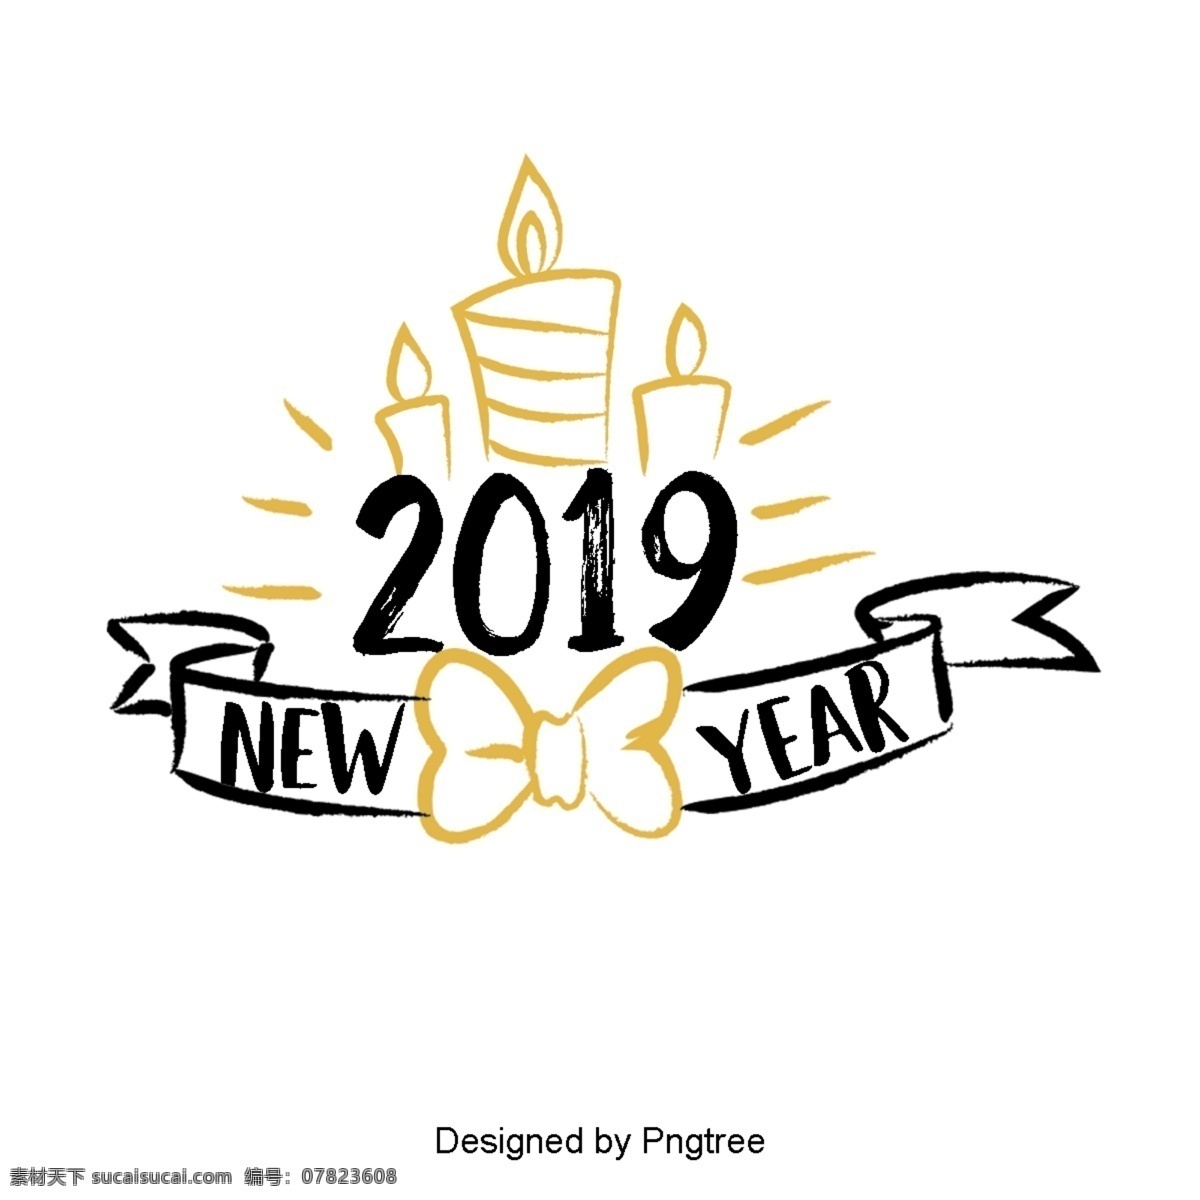 新 年 英国 字体 装饰 金色 黑色 新年 2019 二千一十九 圣诞 彩带 礼品 英语 庆祝春节